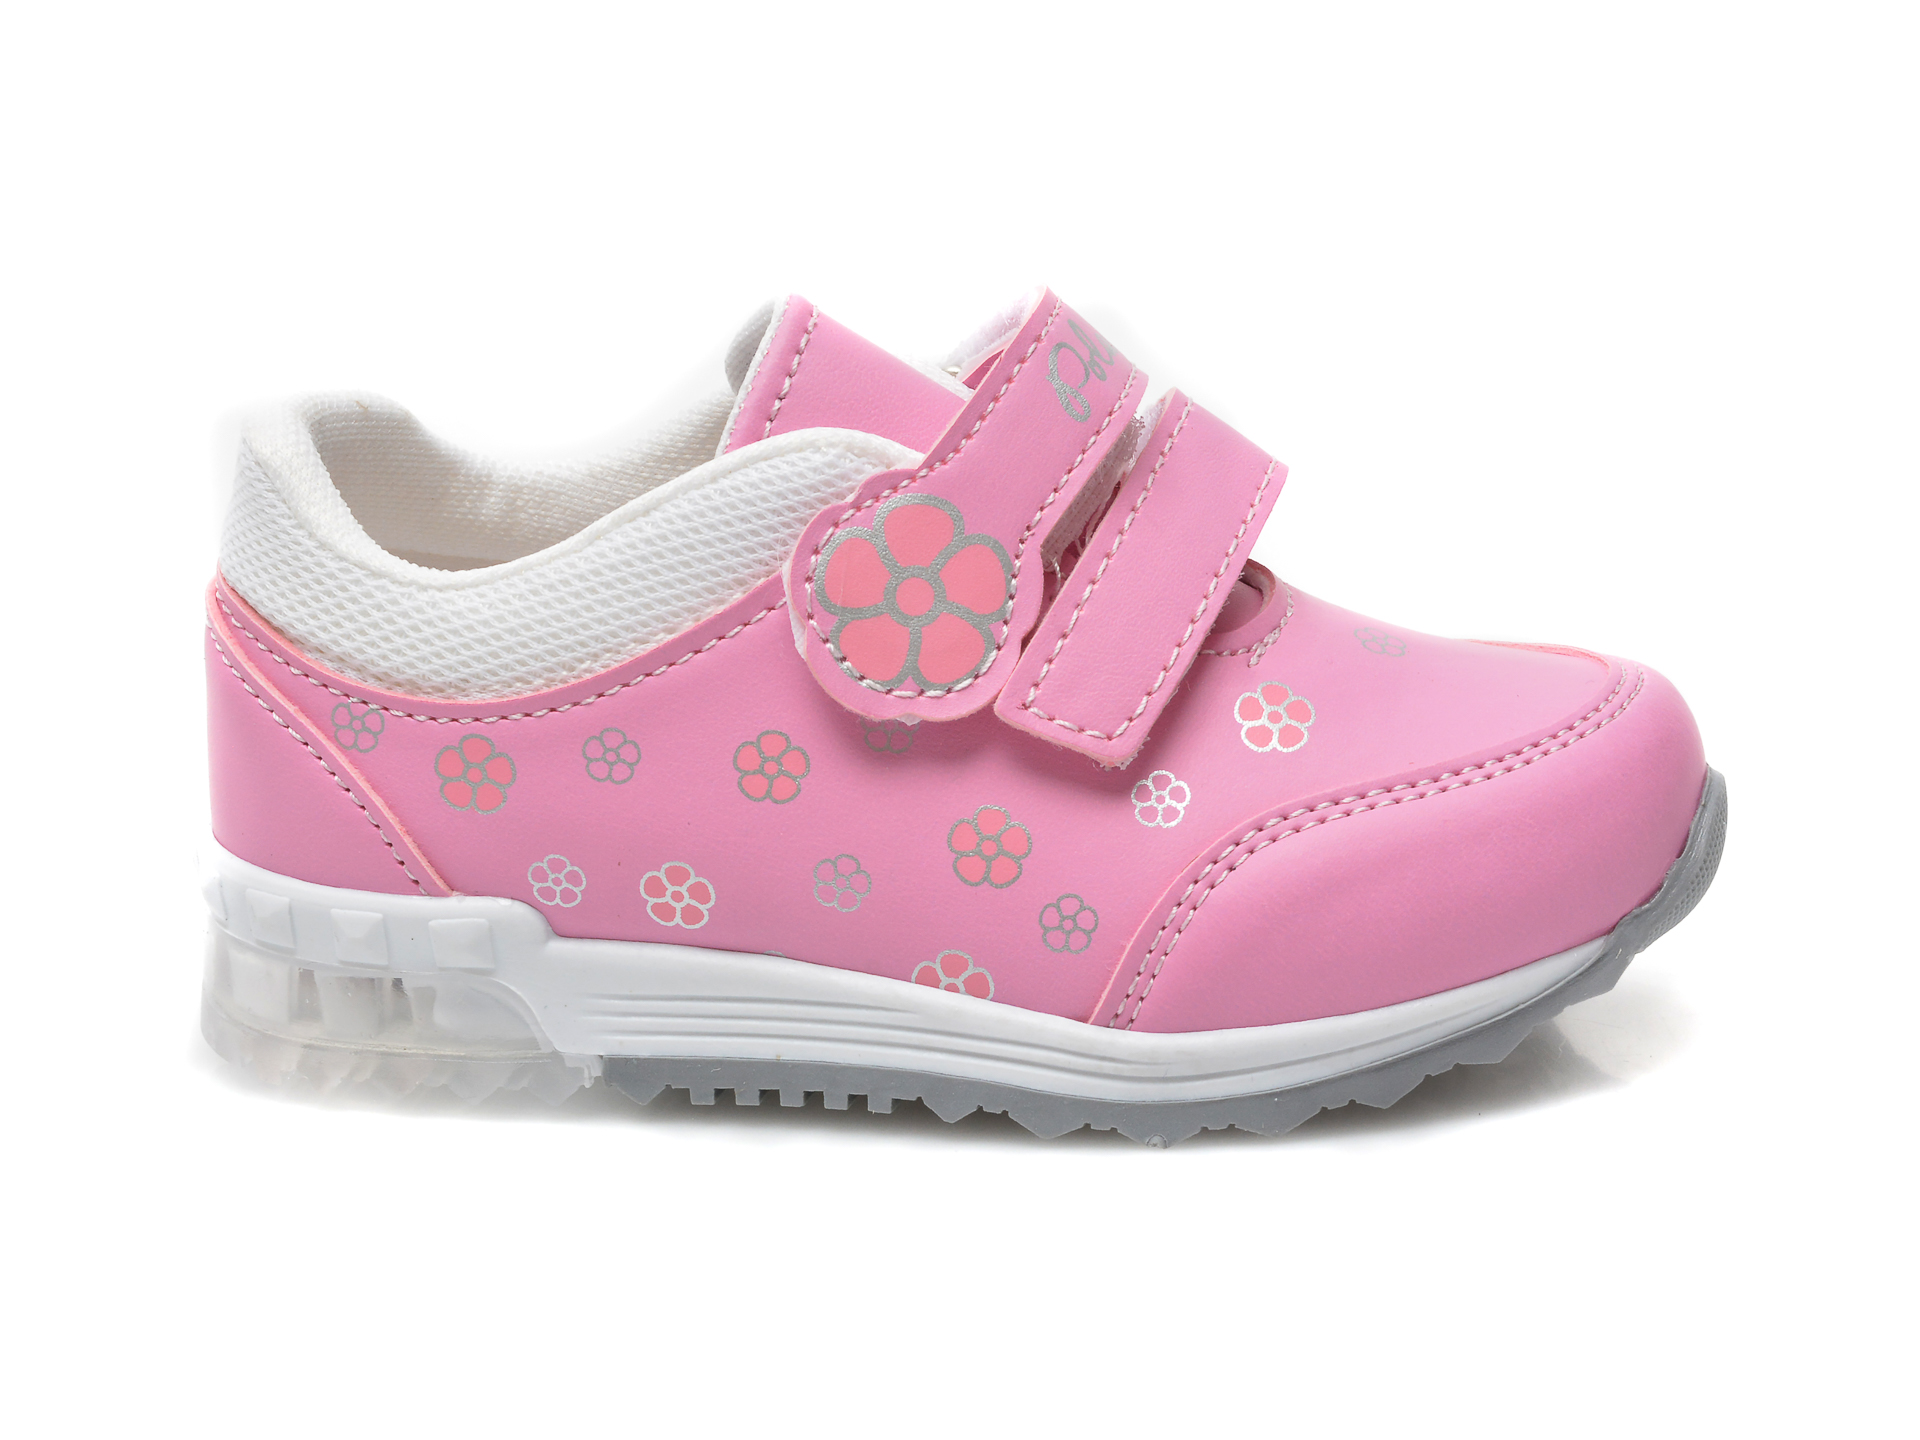 Pantofi sport POLARIS roz, 620114, din piele ecologica - 1